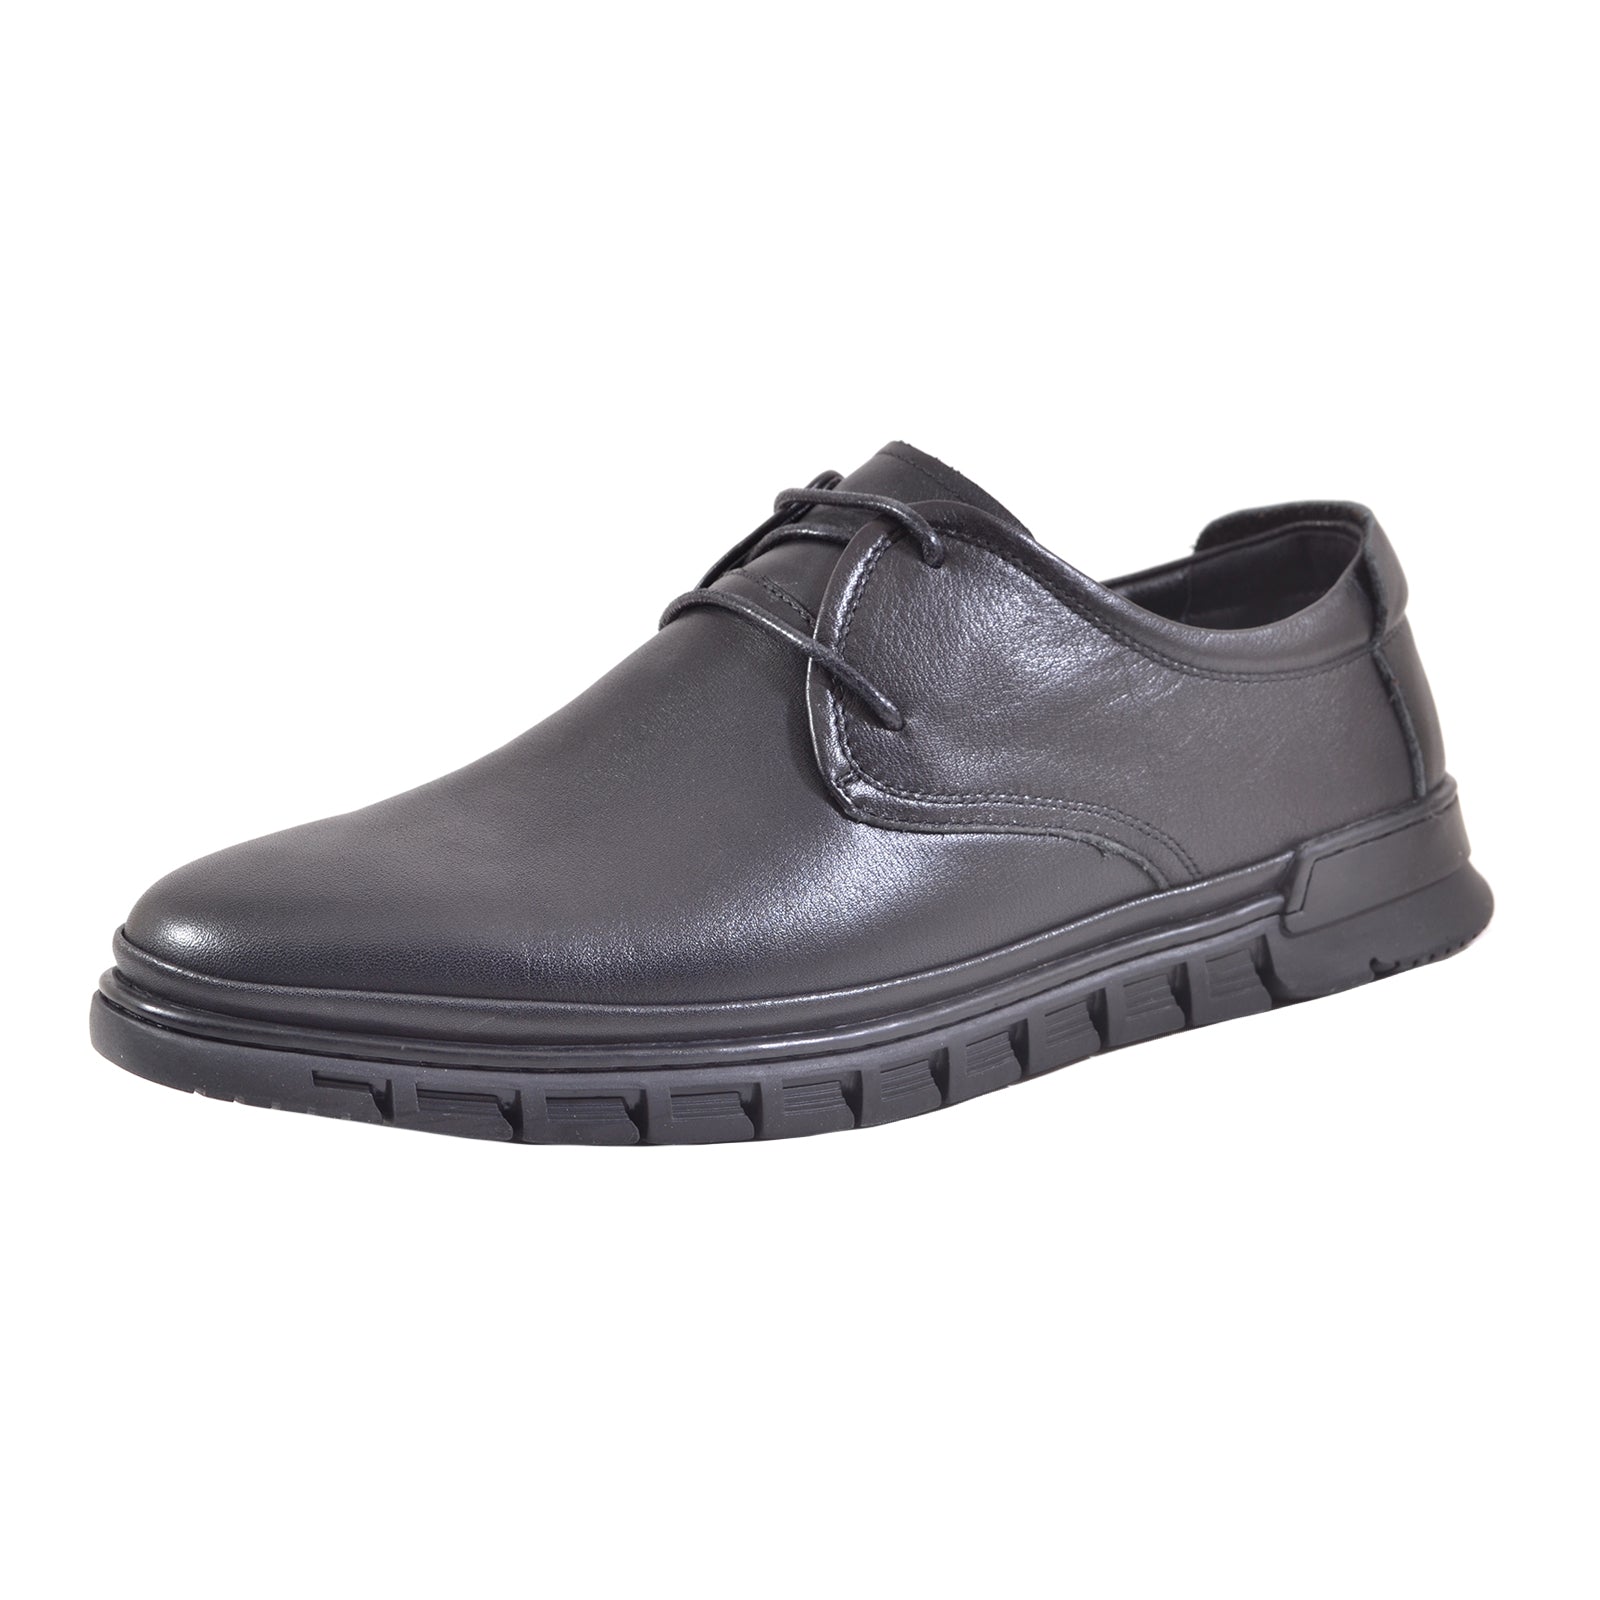 Pantofi barbati Mels 2687-6 Black